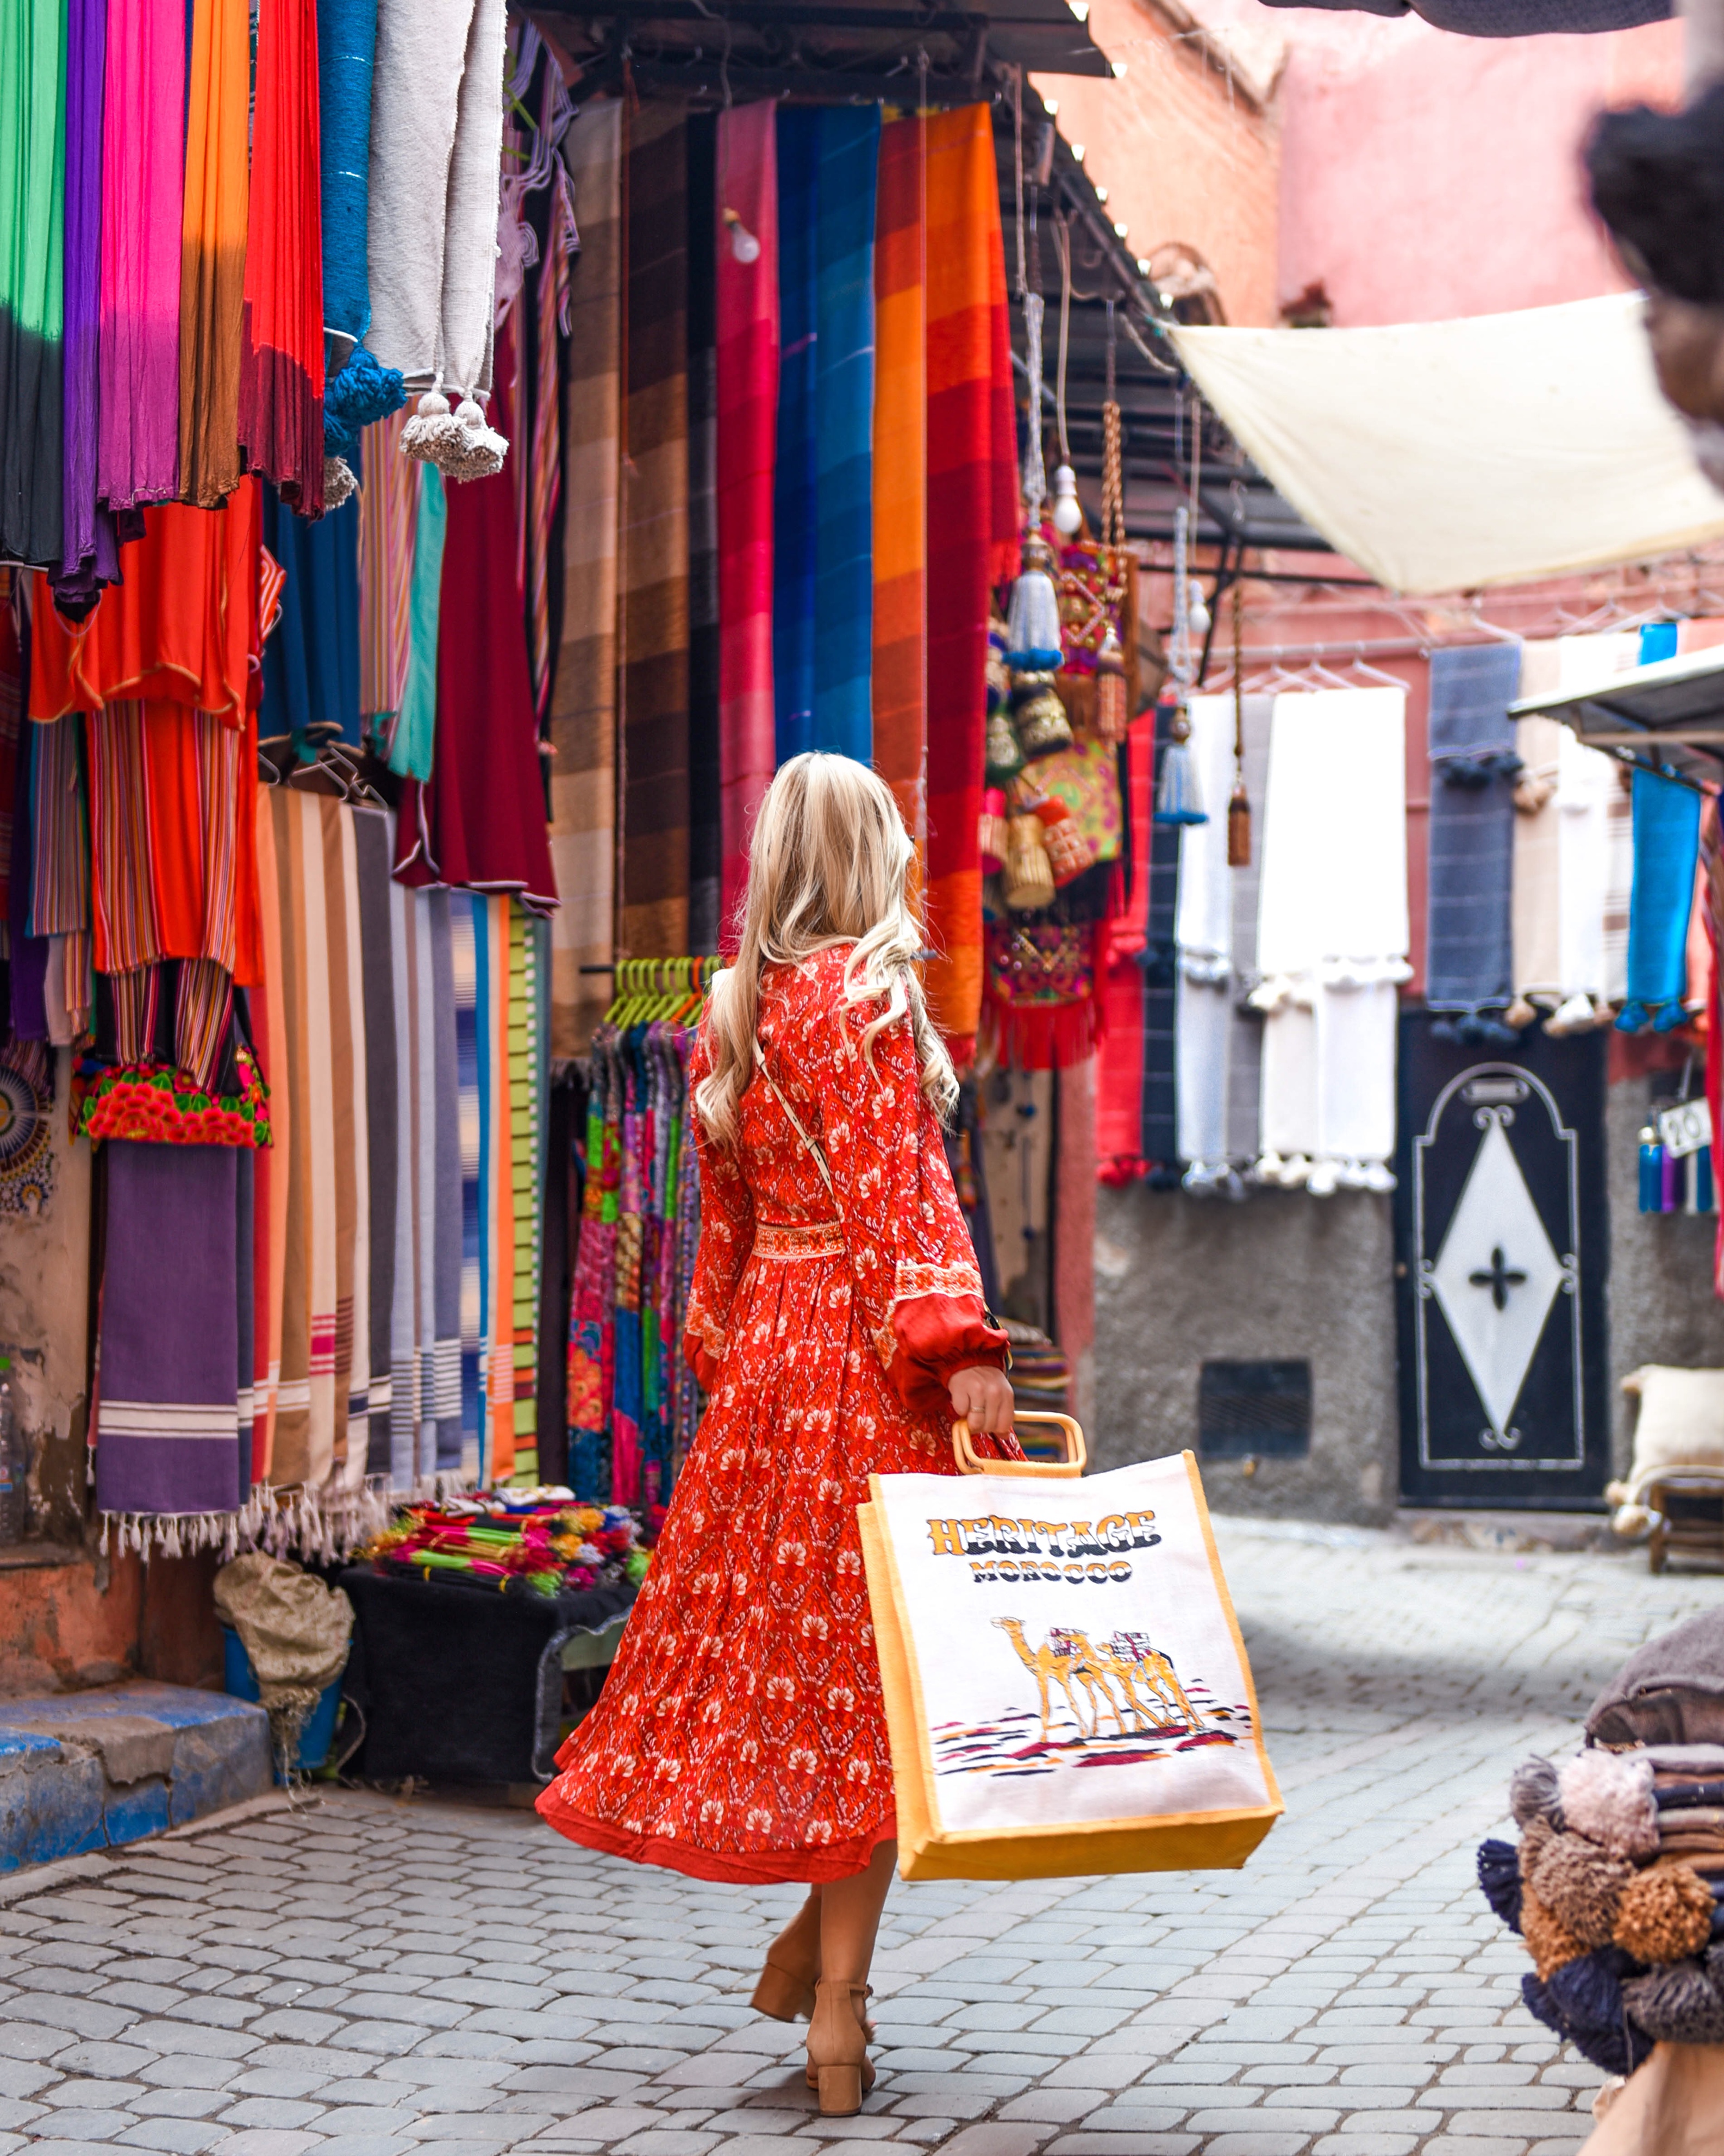 Lo-Murphy-L-Murph-Red-Dress-Marrakech-Souks-Spell-Byron- Bay-Travel-Style